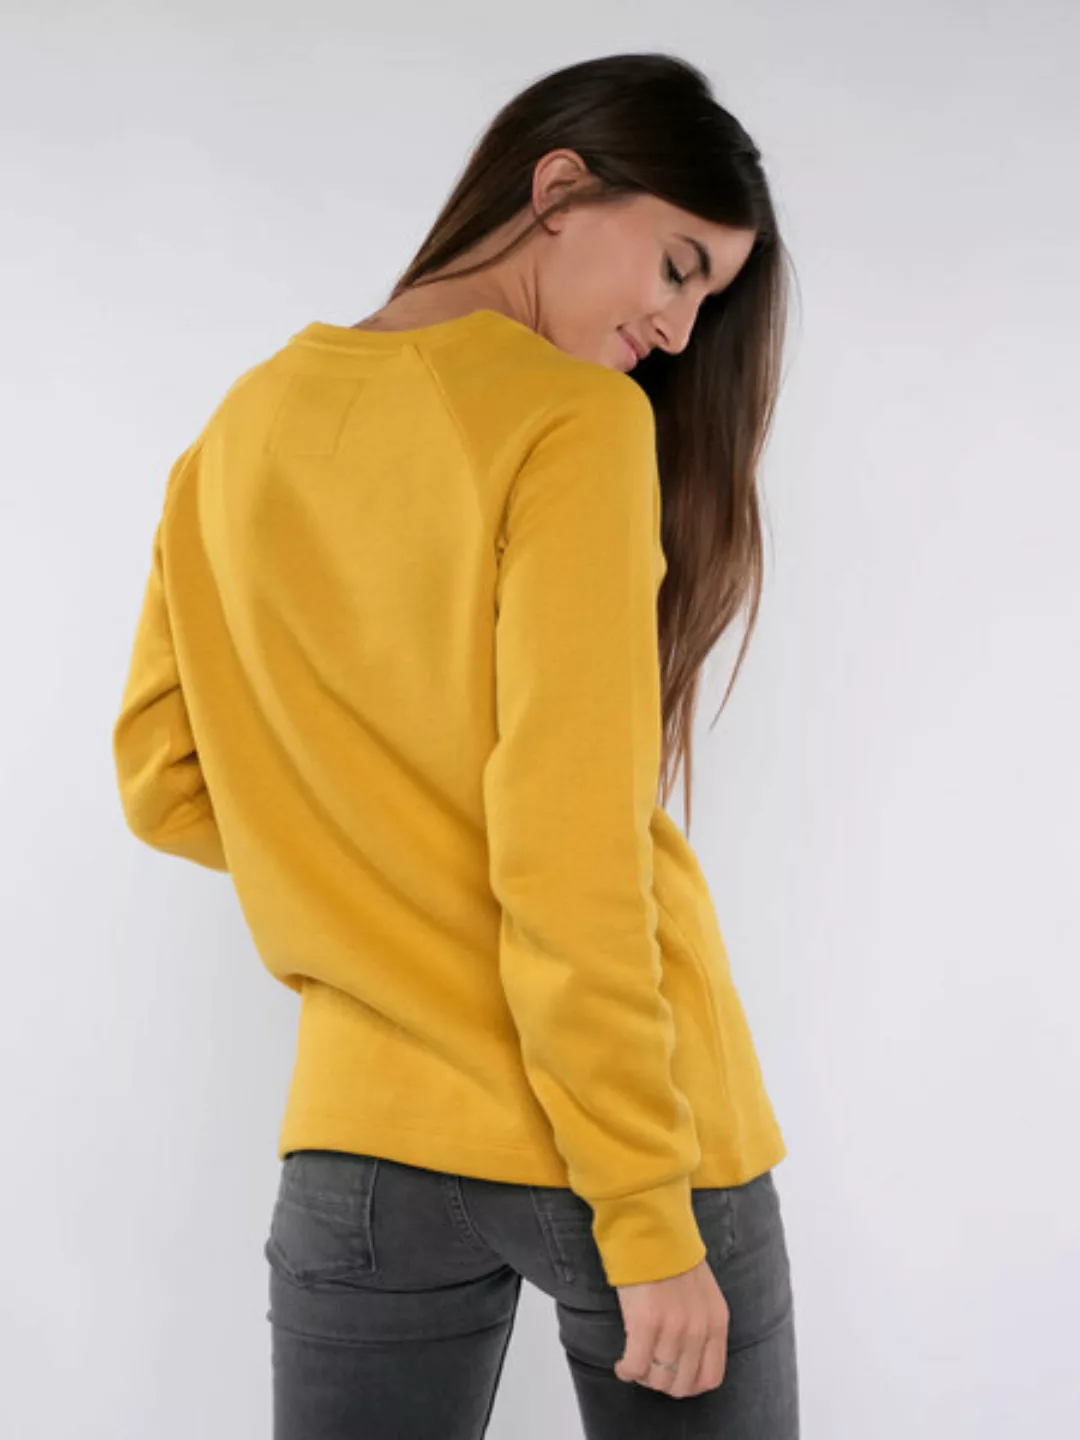 Damen Pullover - Stand For Values günstig online kaufen